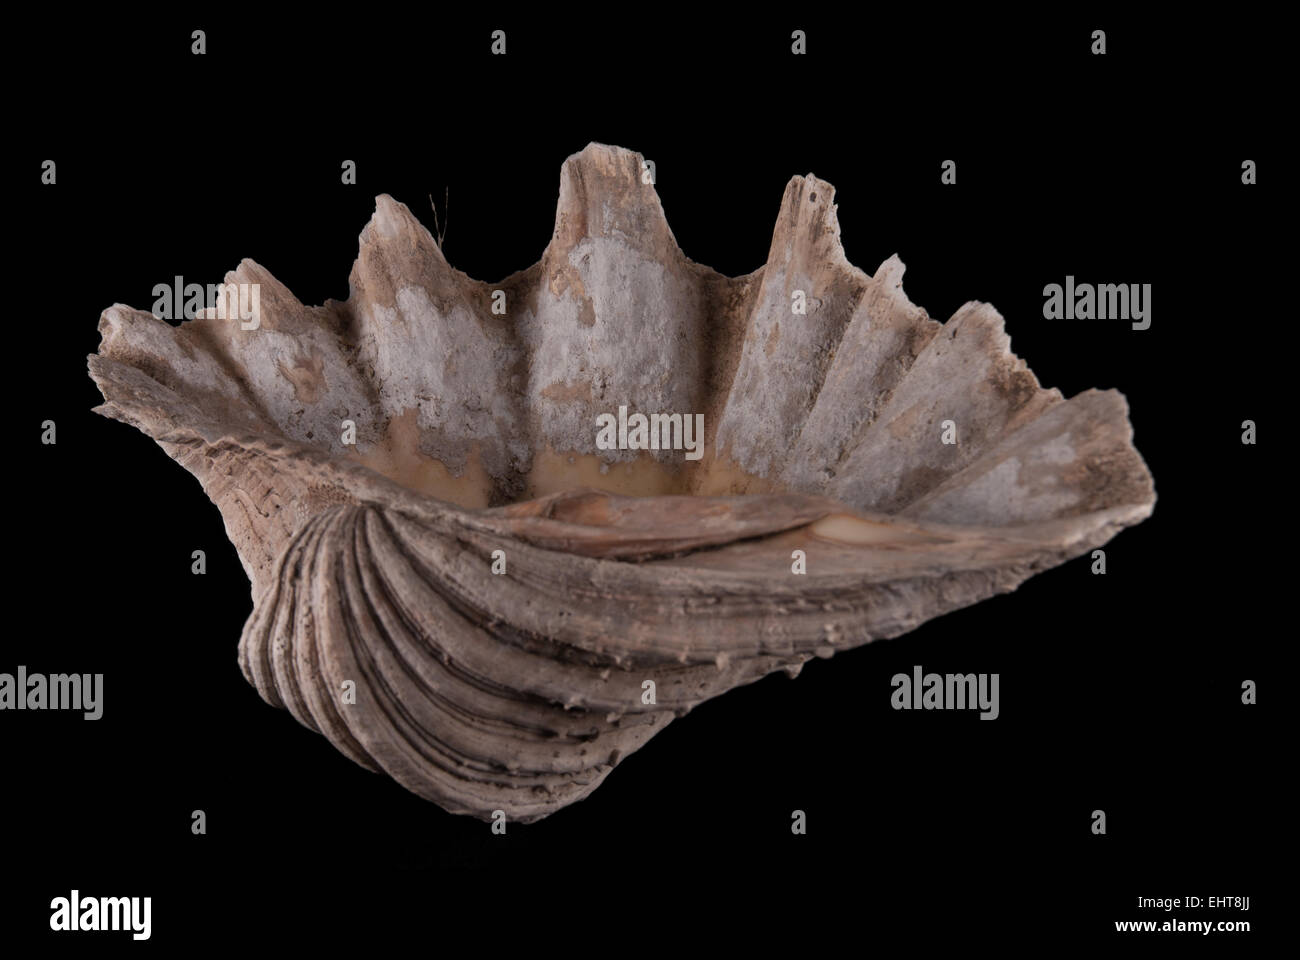 Giant clam, ausgegraben in archäologischen Stätte von Batujaya, West-Java, wahrscheinlich als Statussymbol in Frühgeschichte Periode verwendet. Stockfoto